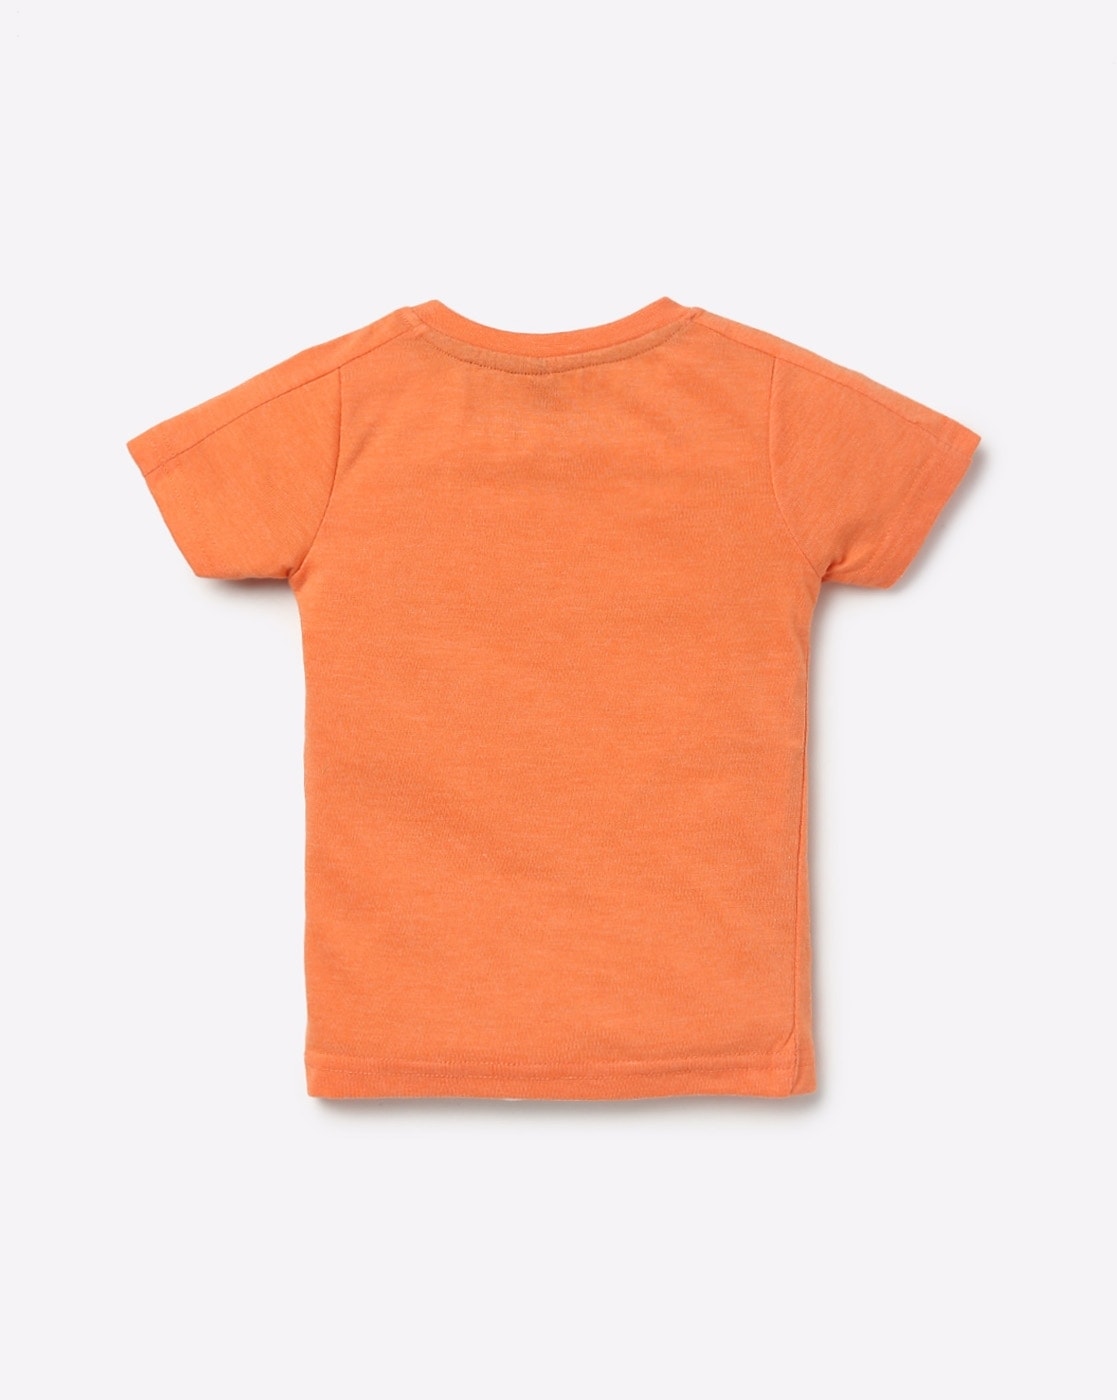 orange t shirt asda